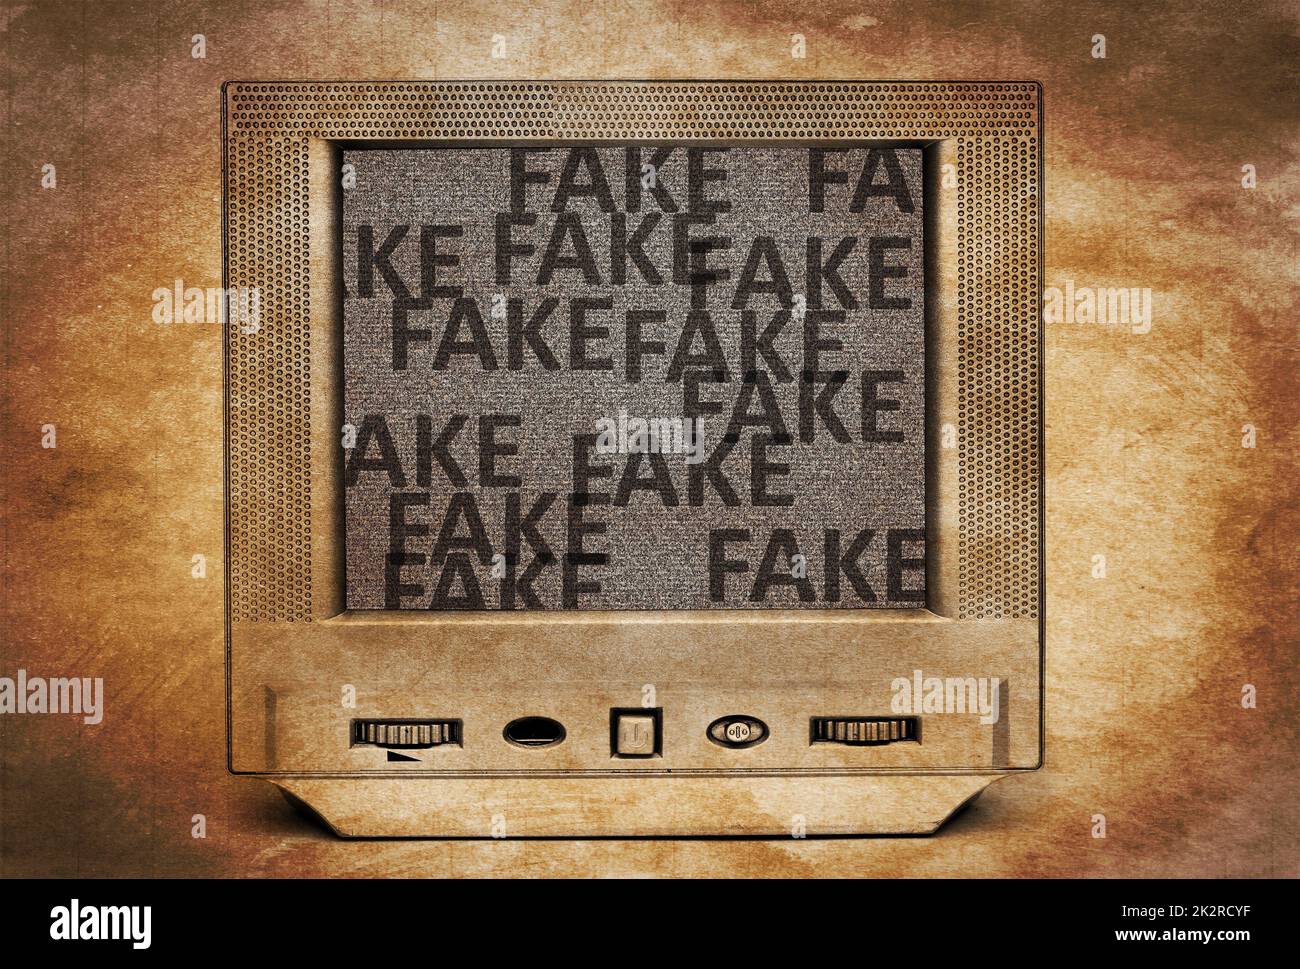 Fake TV-Programm Stockfoto